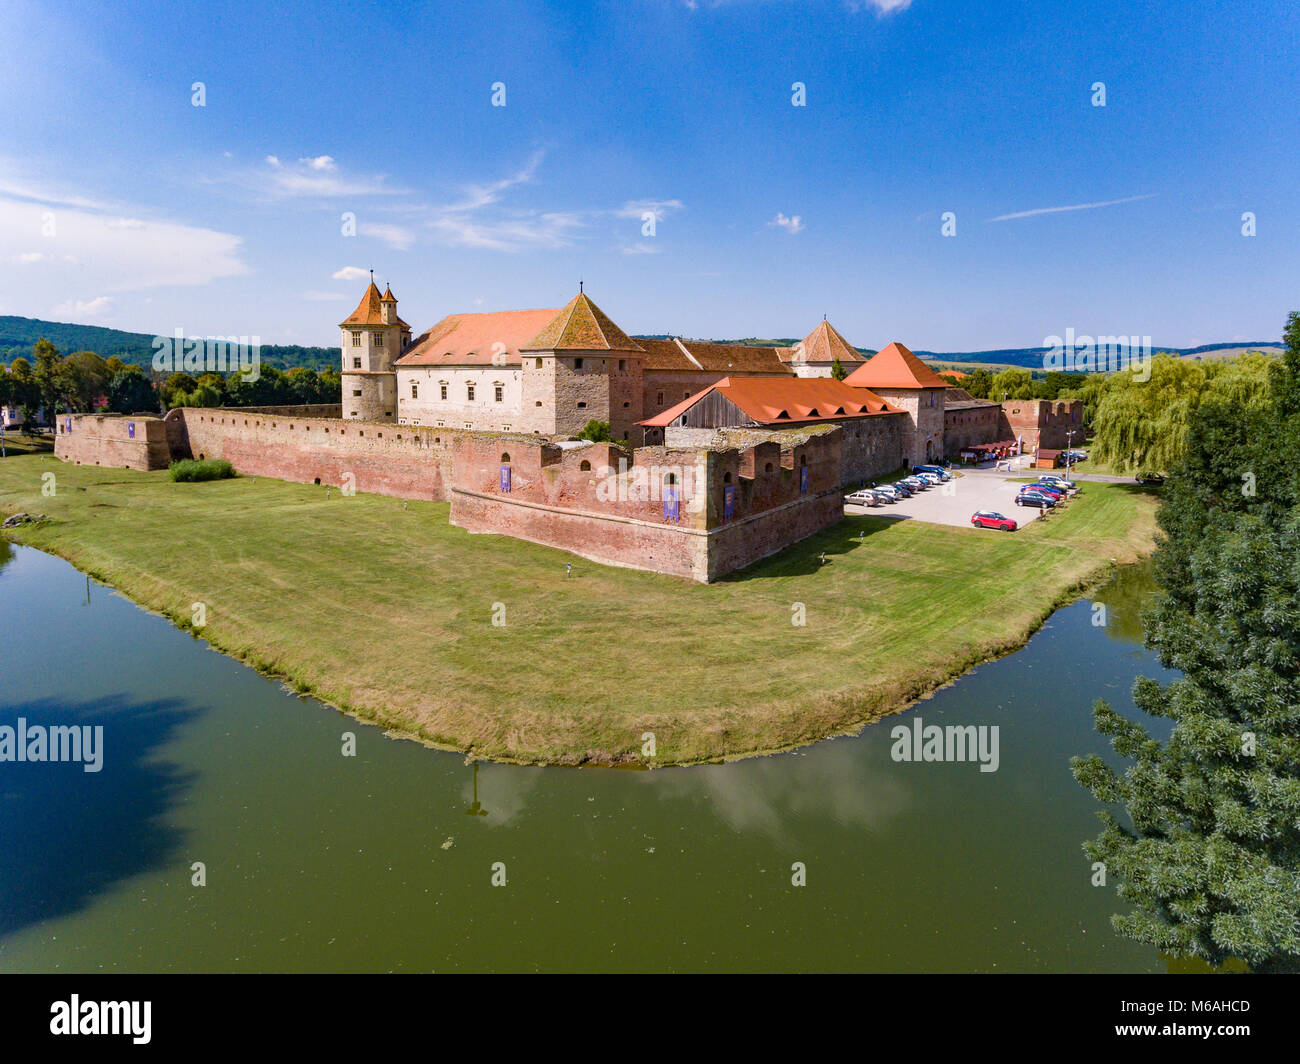 Cetatea Fagaras medieval fortress in Brasov county Romania Stock Photo